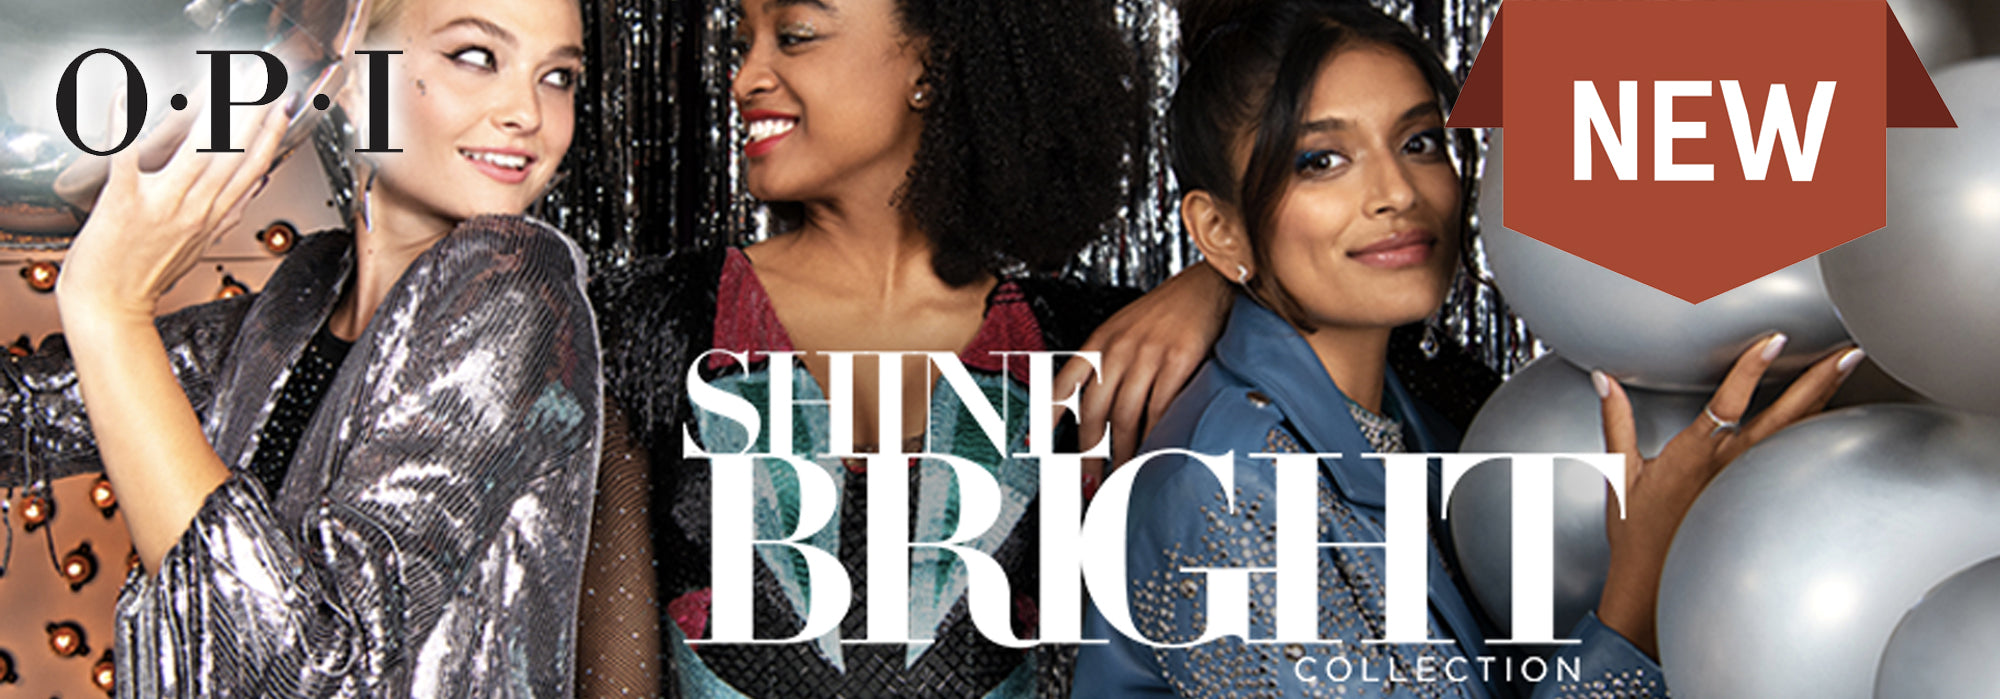 La colección Holiday de OPI: Shine Bright